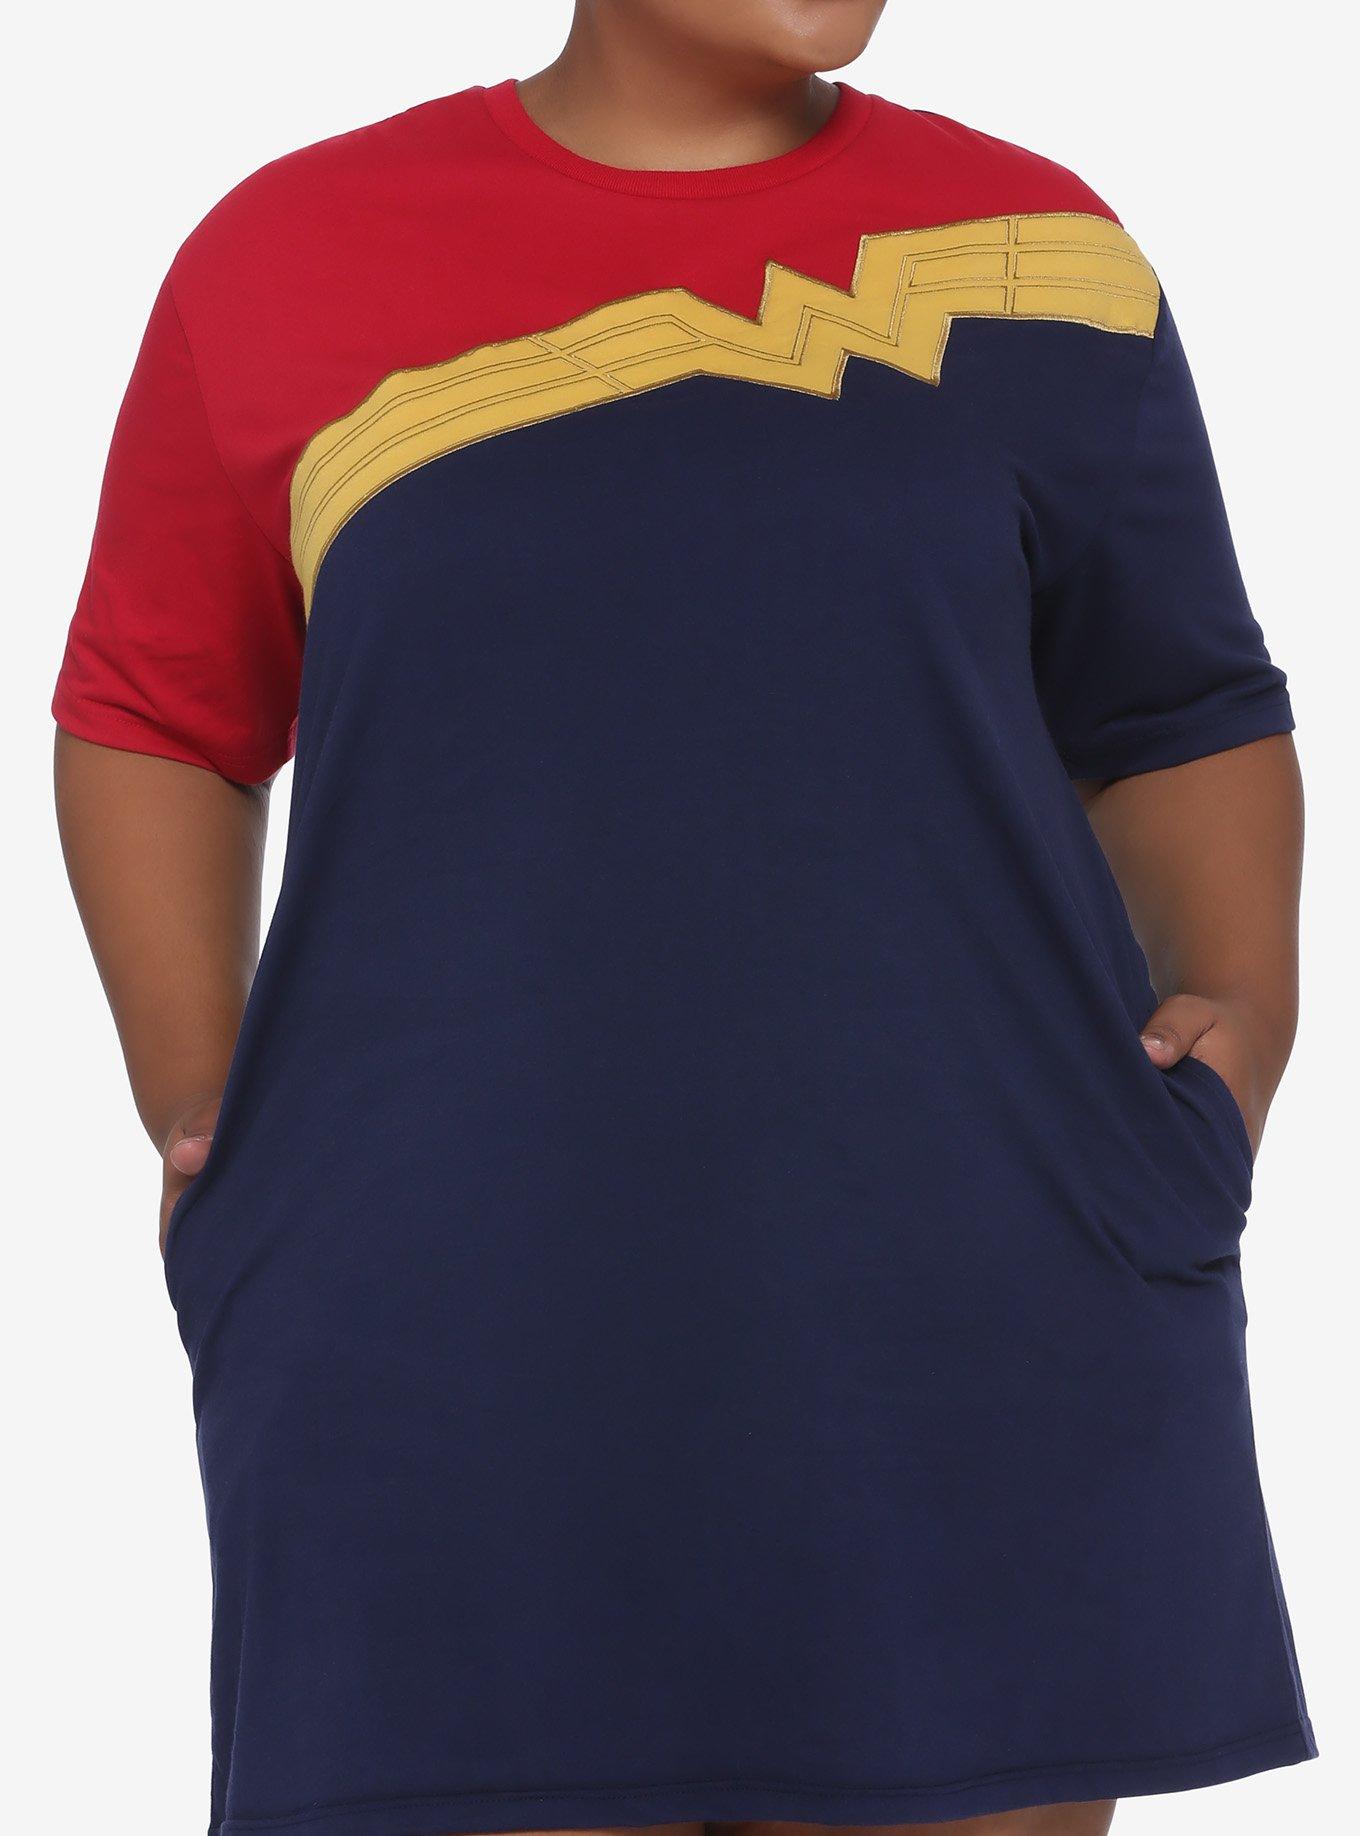 Her Universe DC Comics Wonder Woman 1984 Color-Block T-Shirt Dress Plus Size, MULTI, hi-res